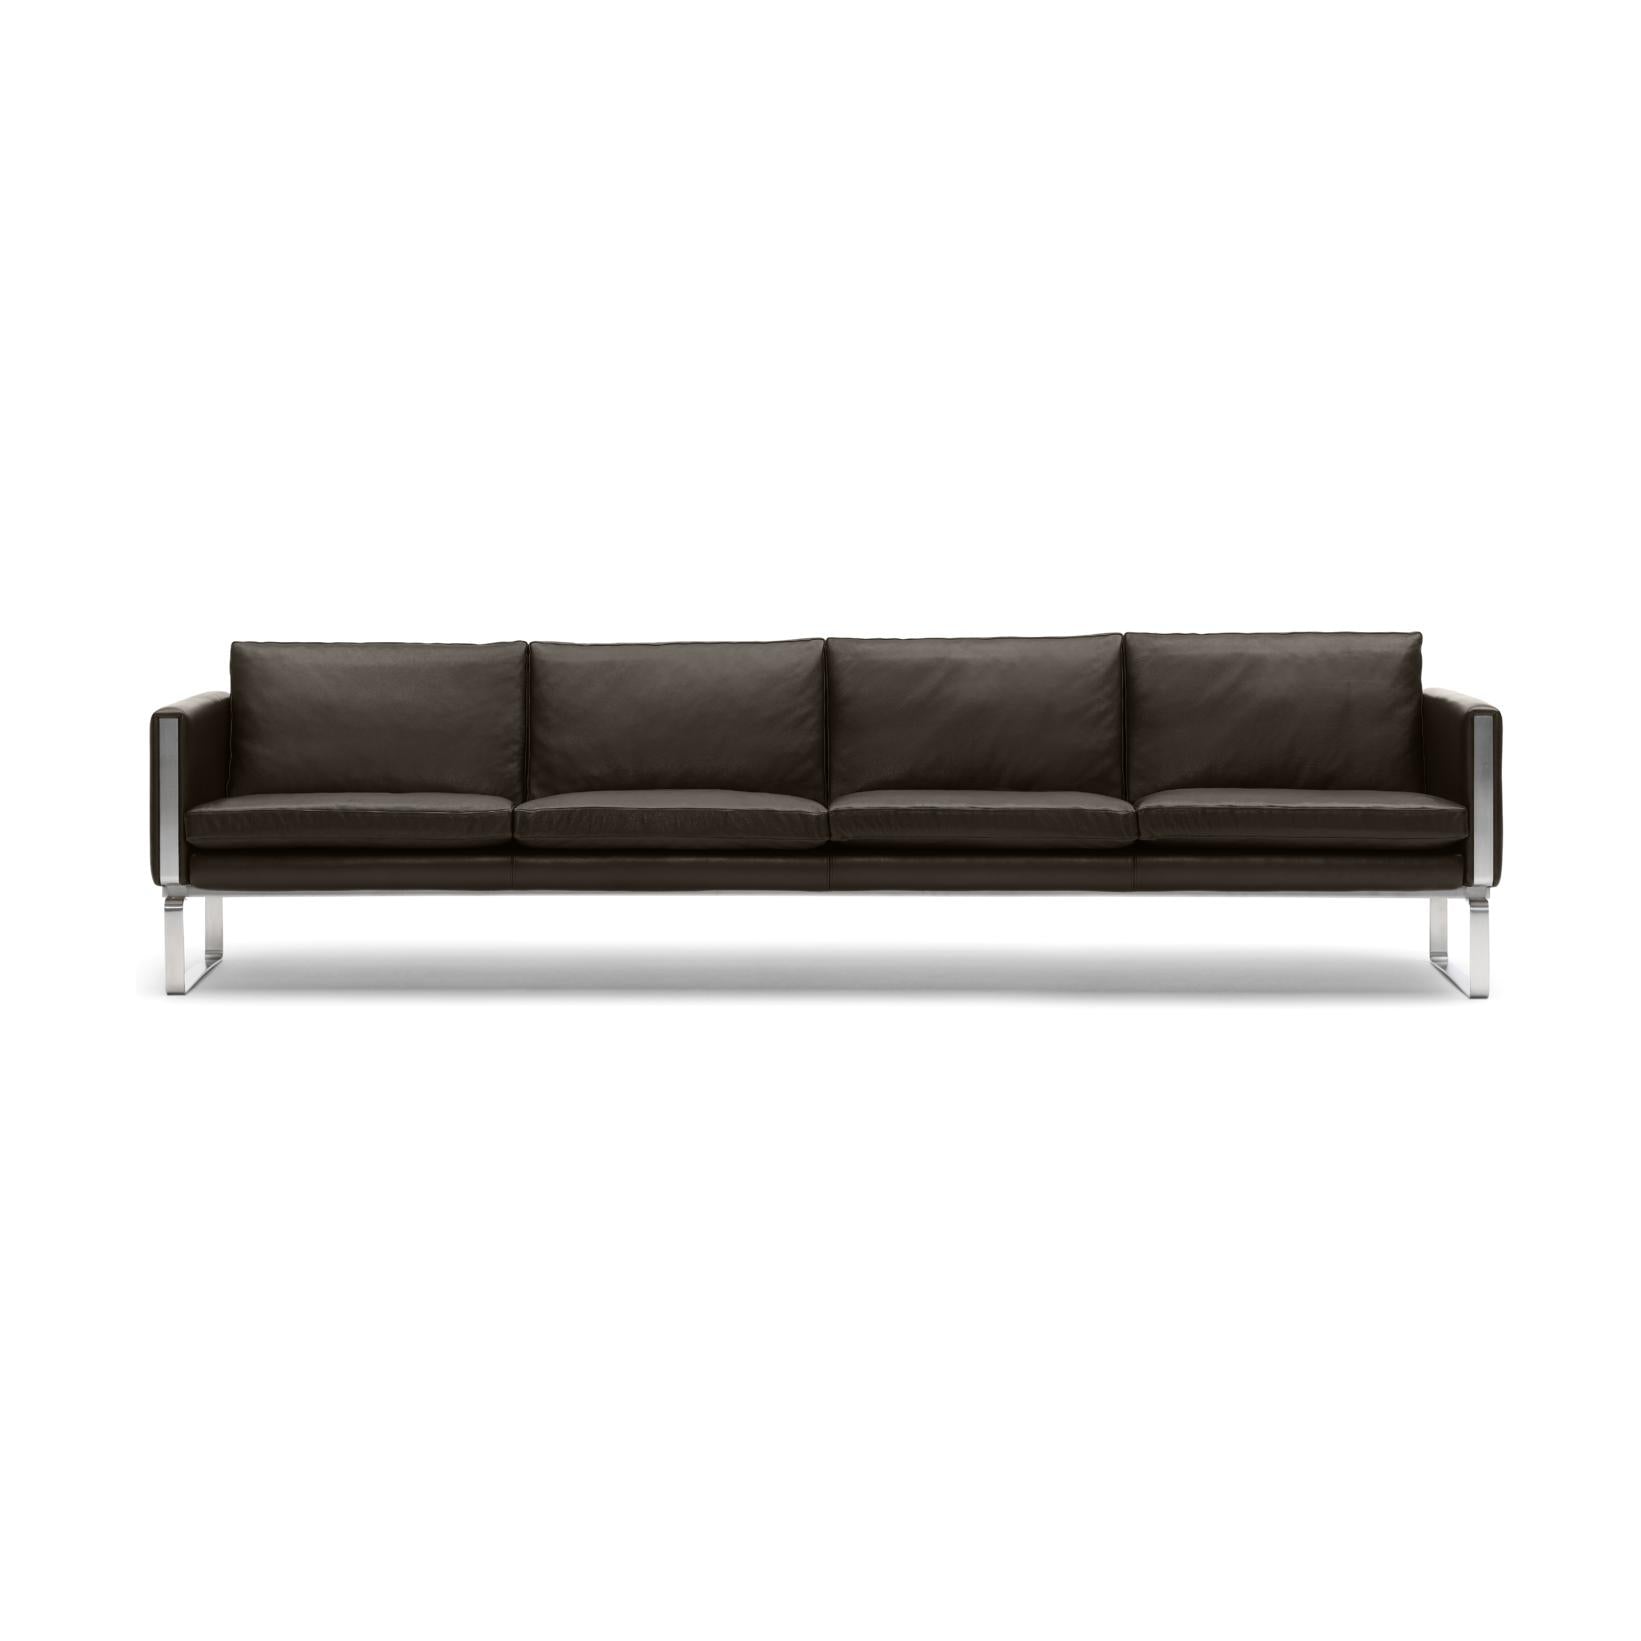 Carl Hansen CH104 divano, in acciaio/pelle marrone scuro